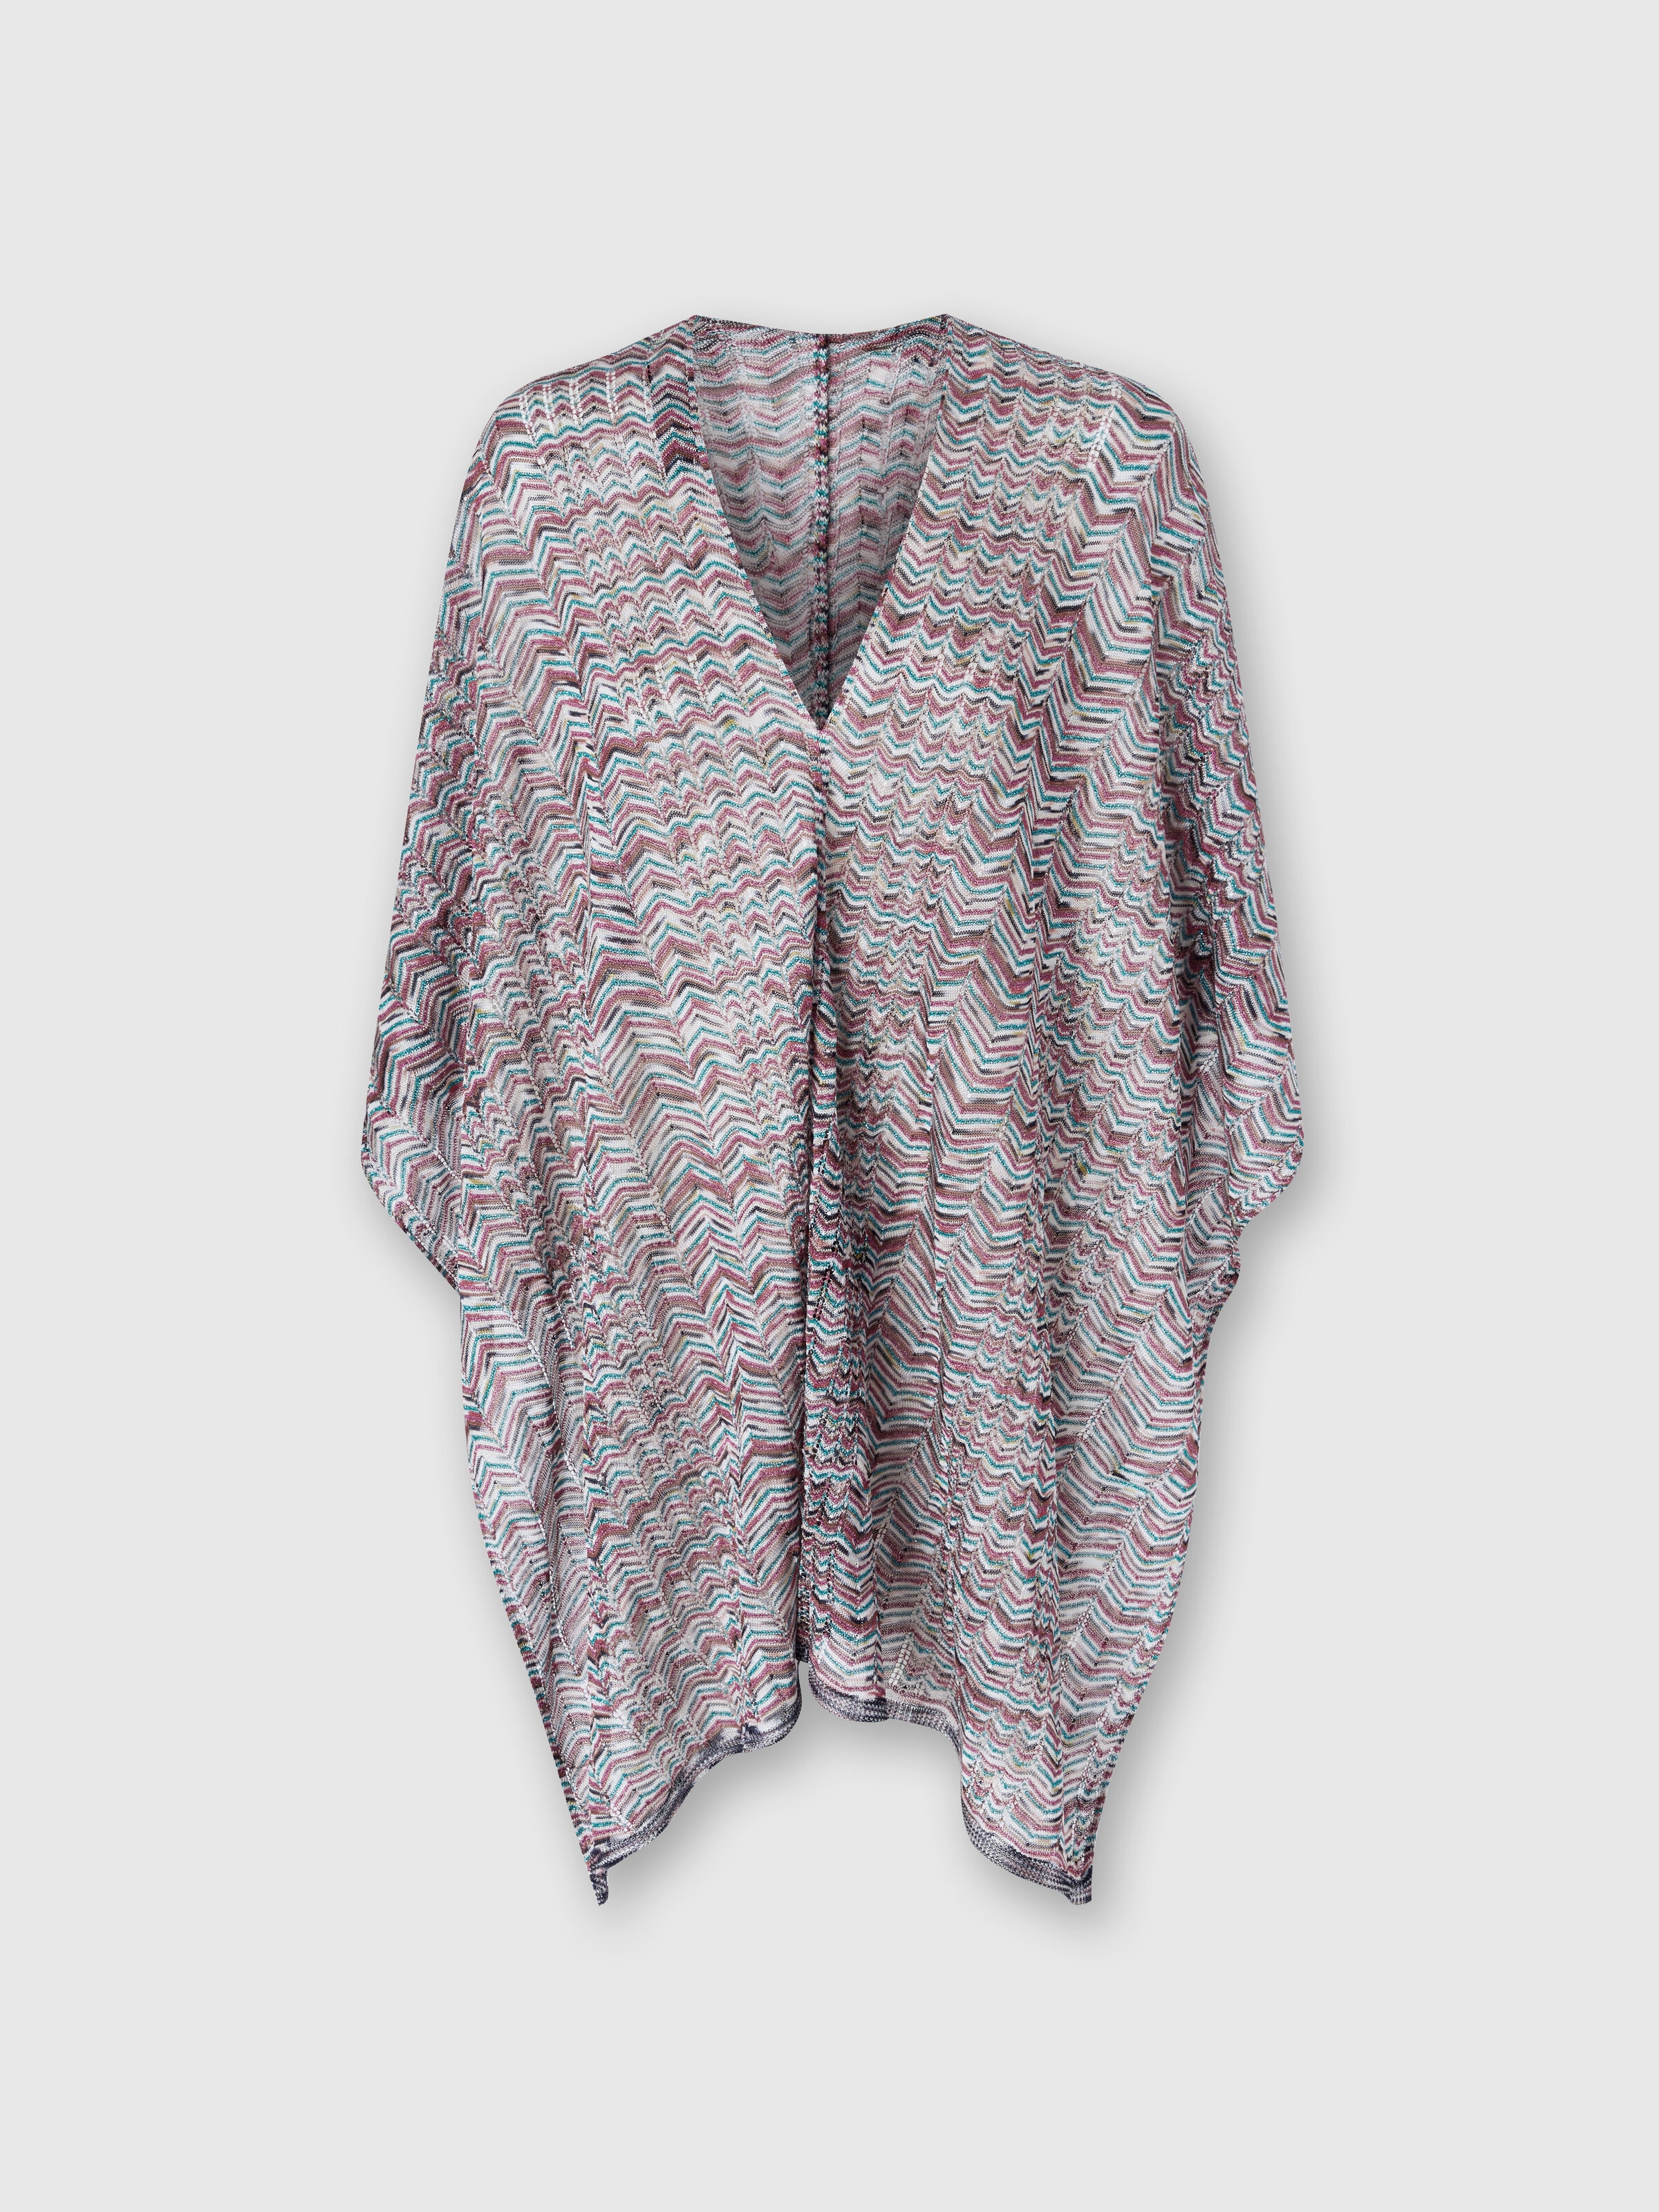 Poncho in viscose and cotton chevron knit, Multicoloured  - 0